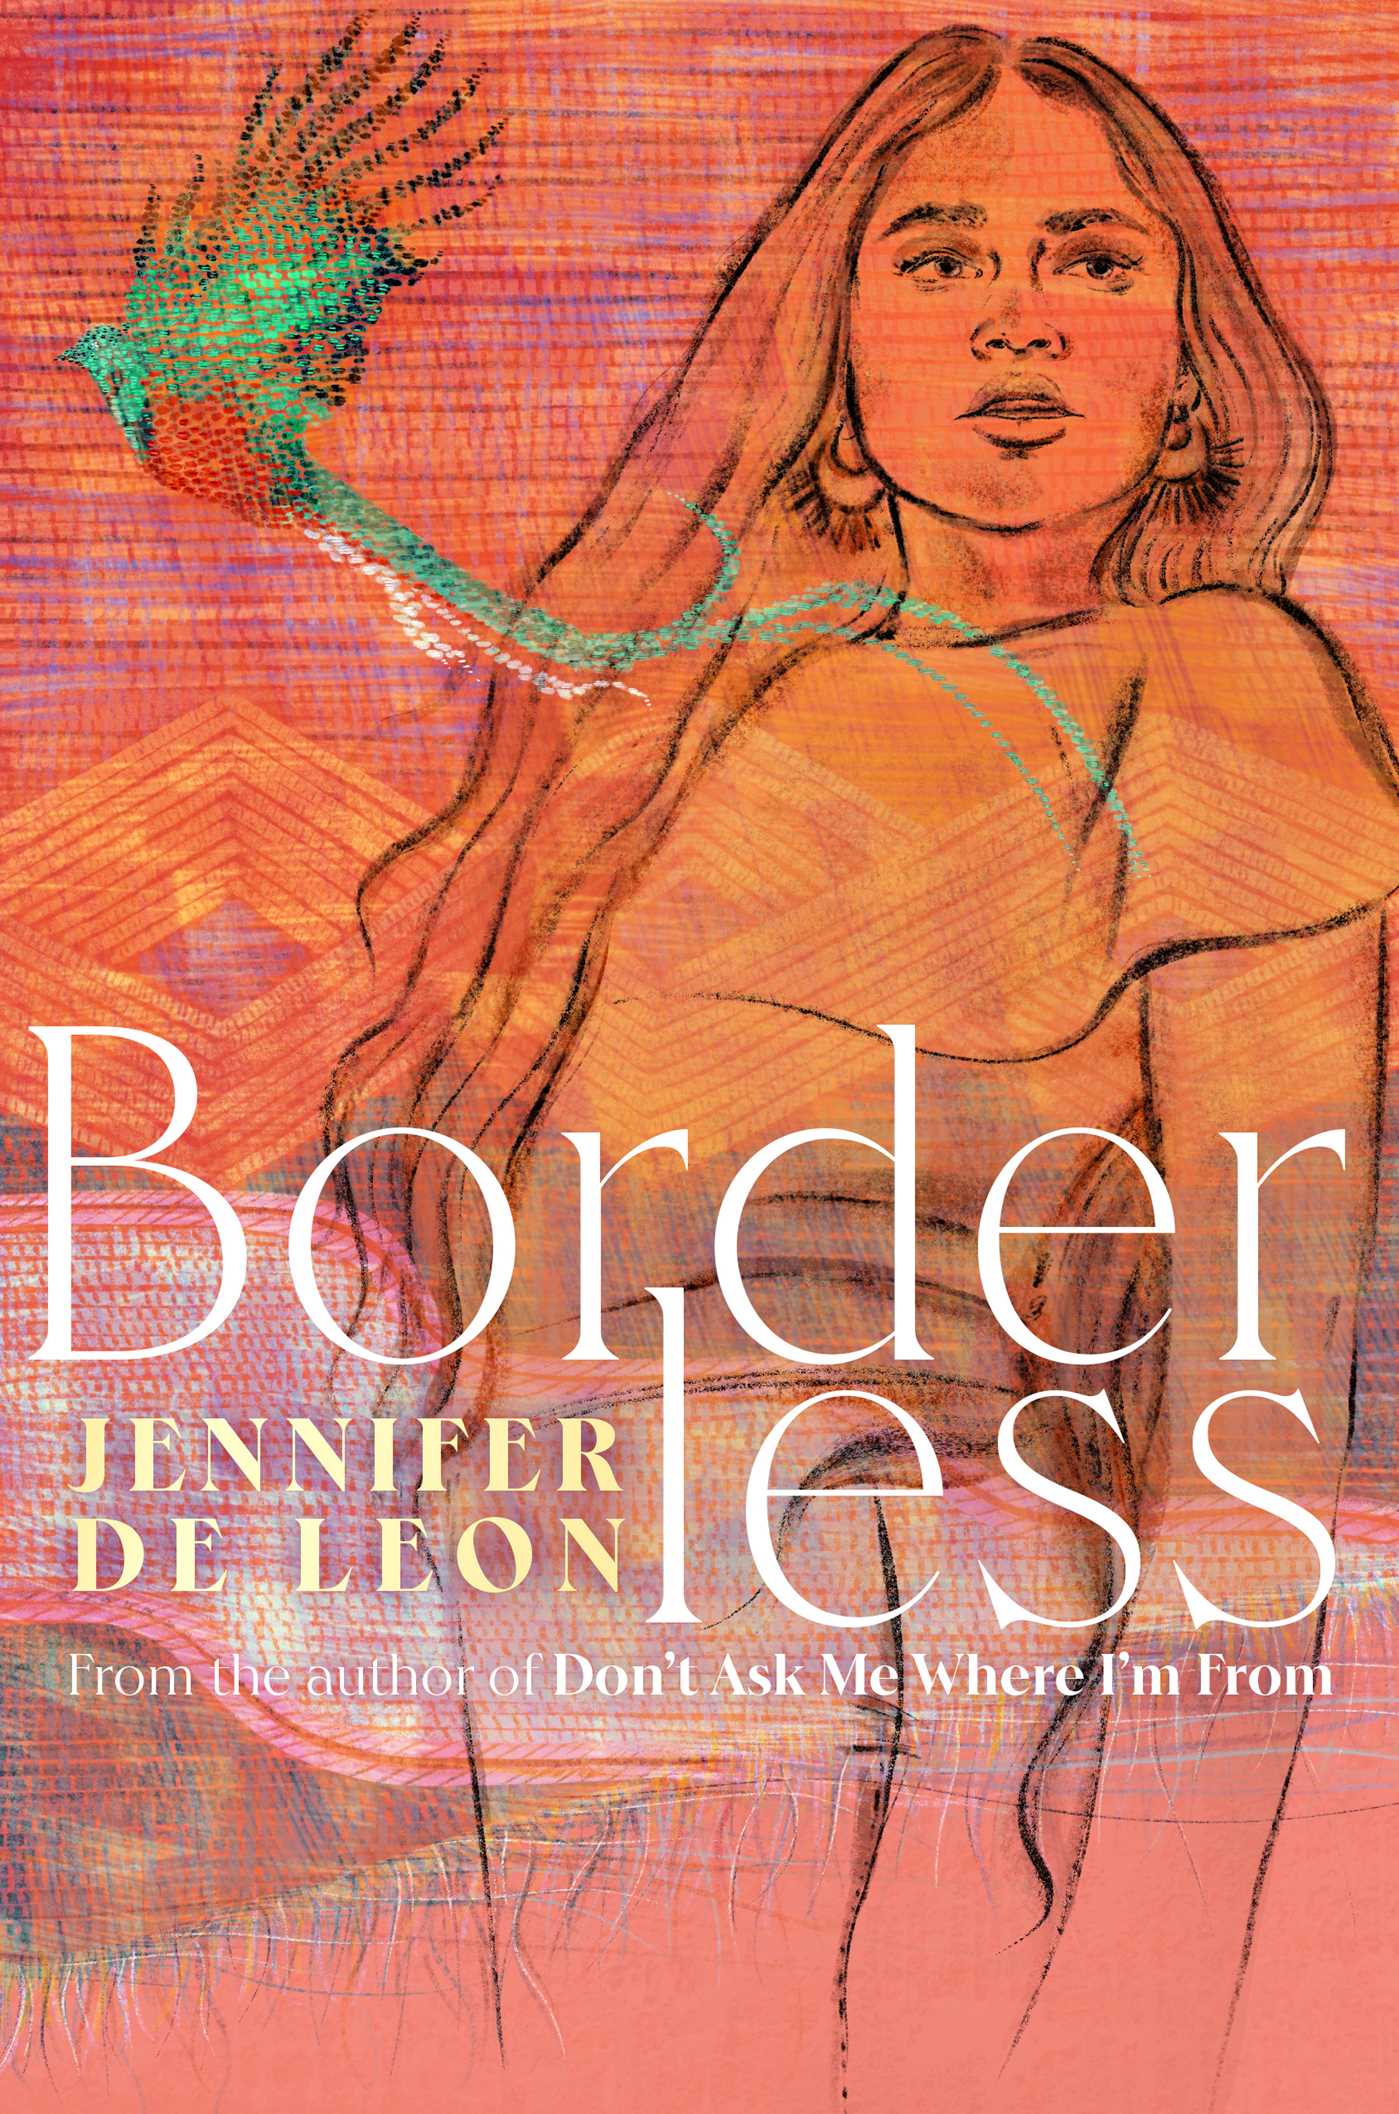 Cover of "Borderless"